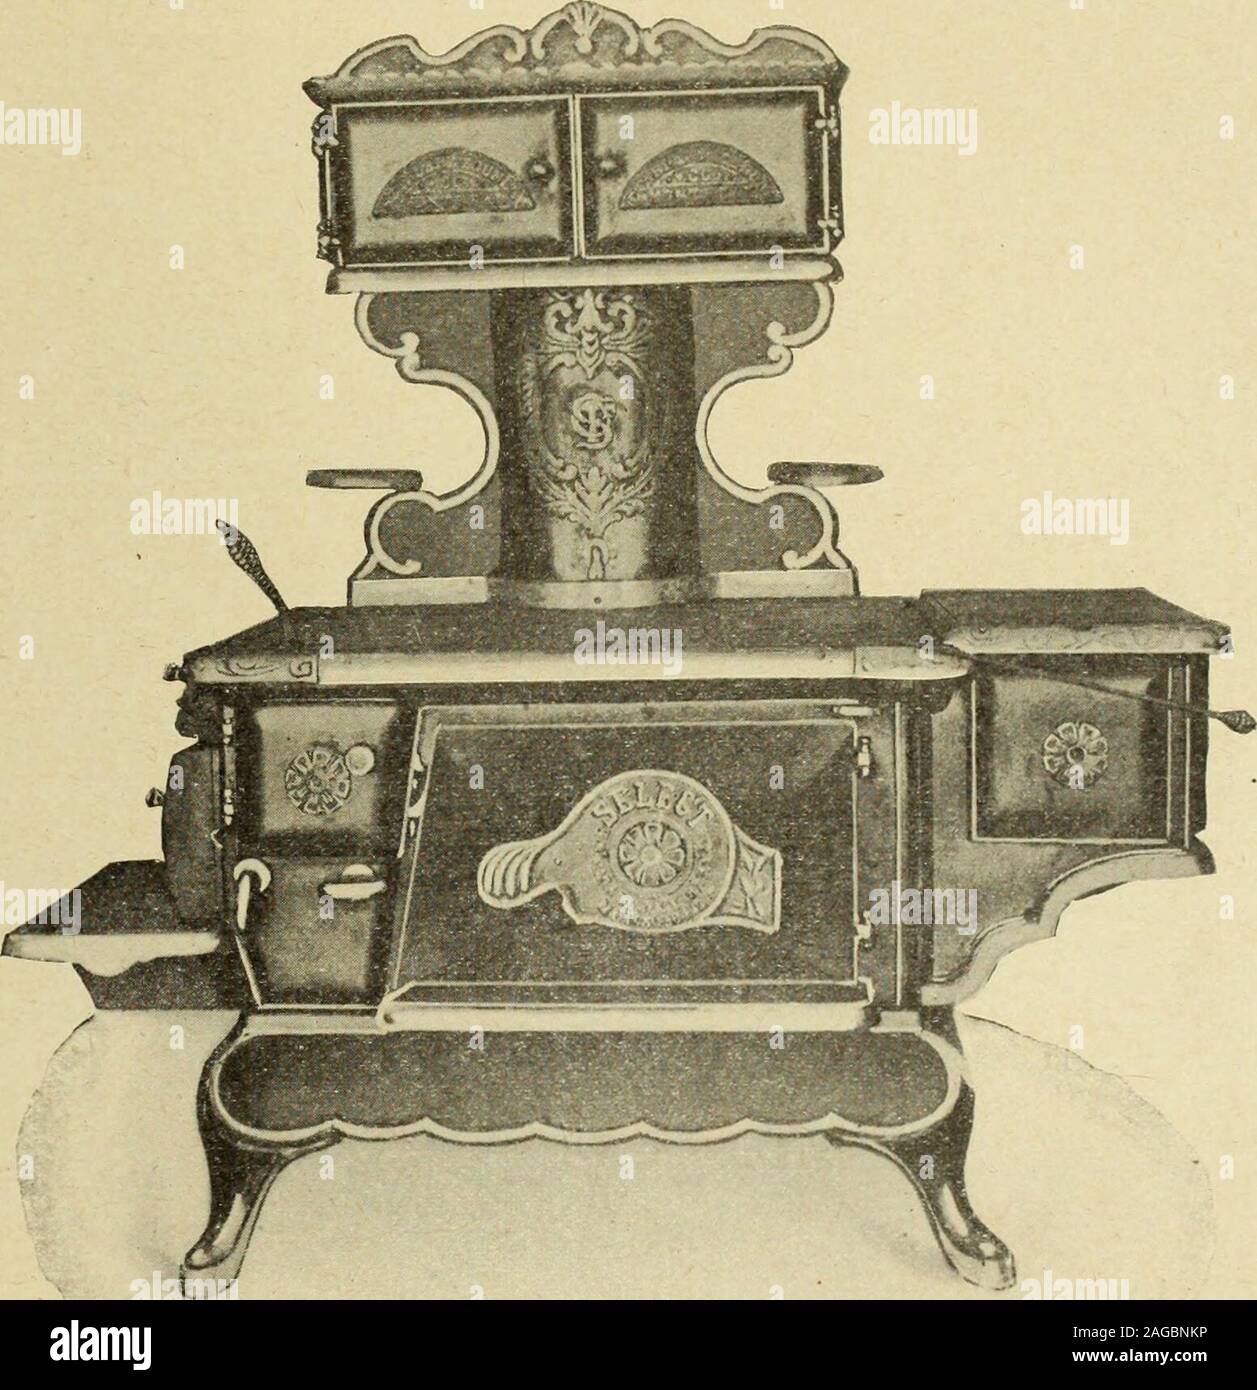 Le quincaillier (Juillet-Decembre 1905). e double dun inventeur emerite. II  ainvente les ventilateurs Aeolien etZephyr, une trappe anti-symphonique,un  tuyau de conduite a expansion, etc.,mais son oeuvre principale est le  Nou-veau Filtre